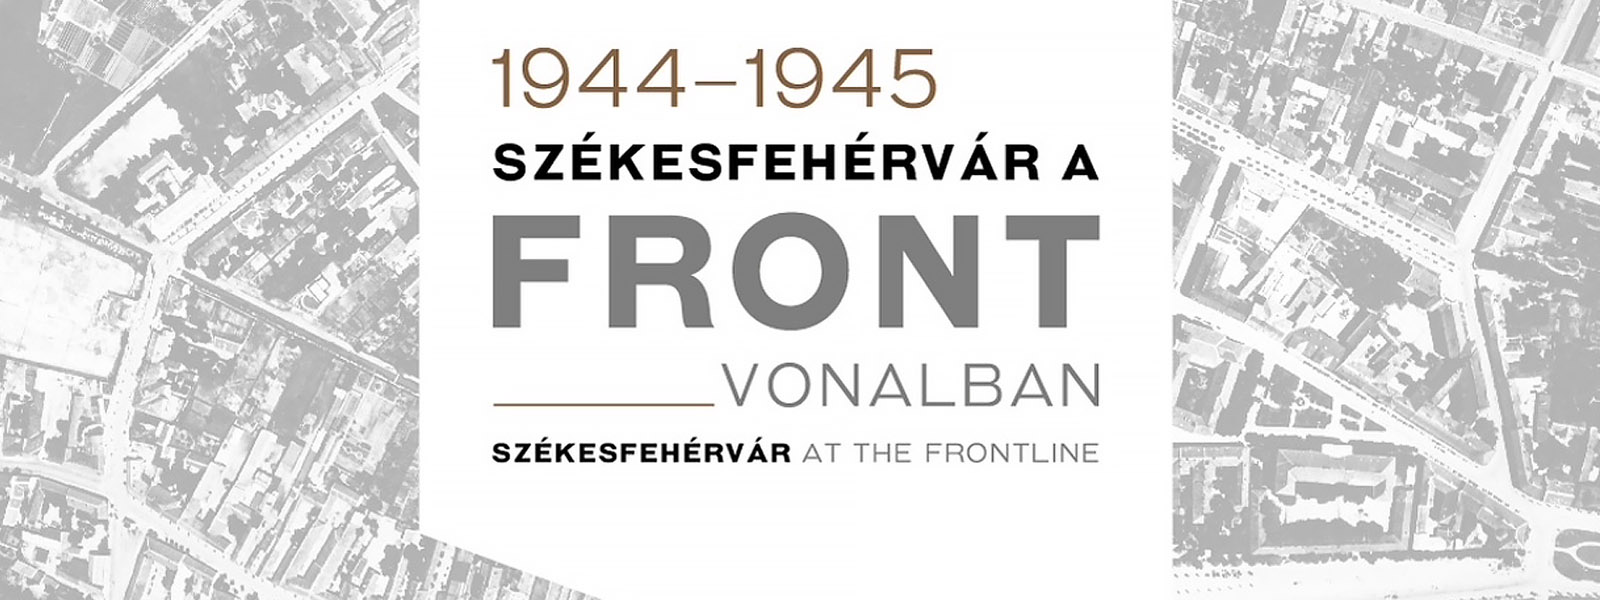 Székesfehérvár a frontvonalban 1944–1945| kiállítás